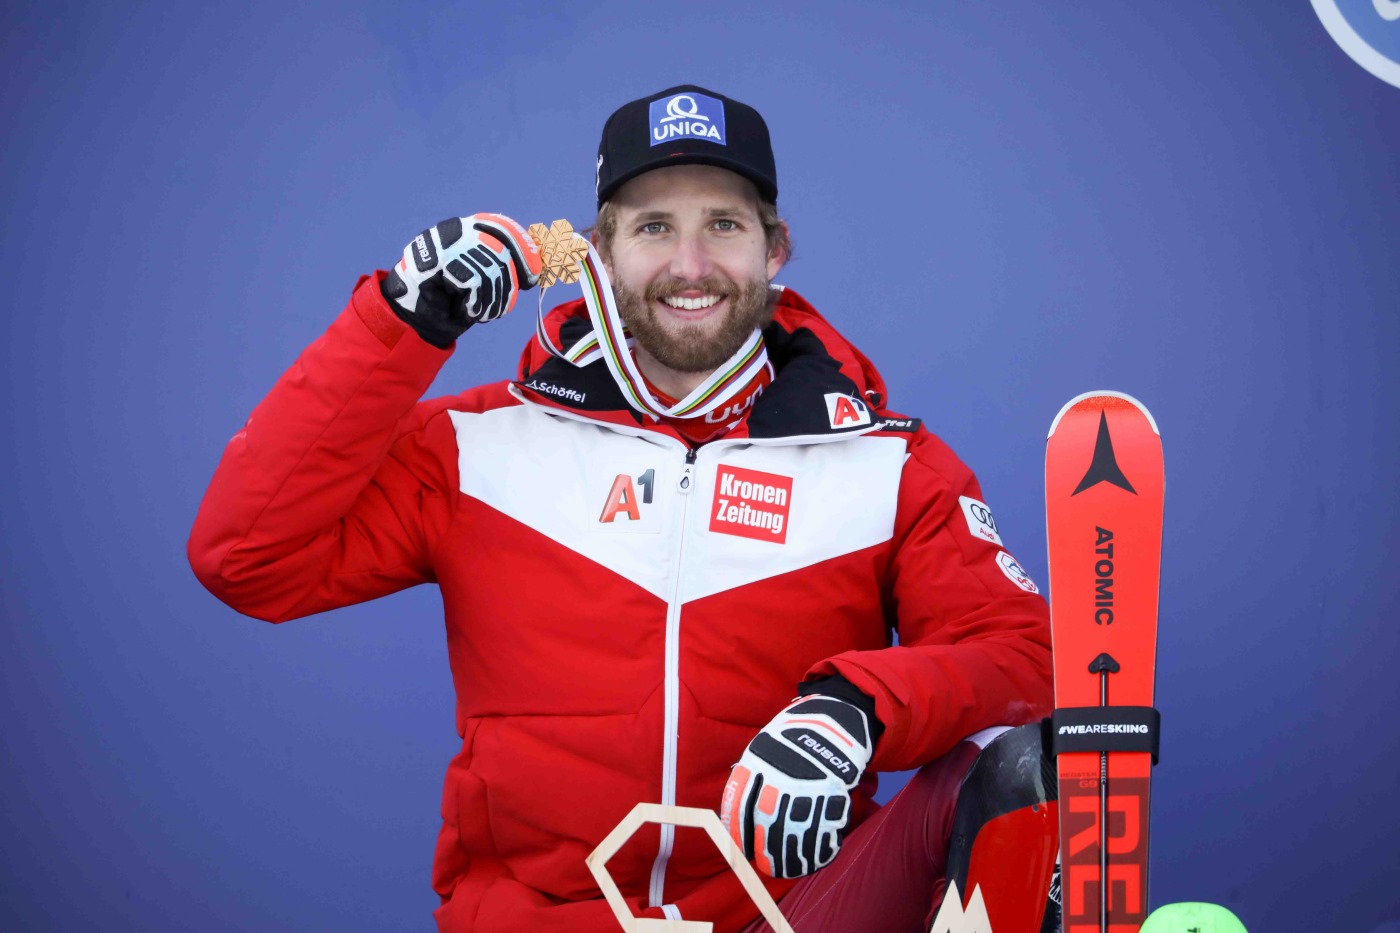 Marco Schwarz se adjudica su primer oro mundial en la Combinada de Cortina